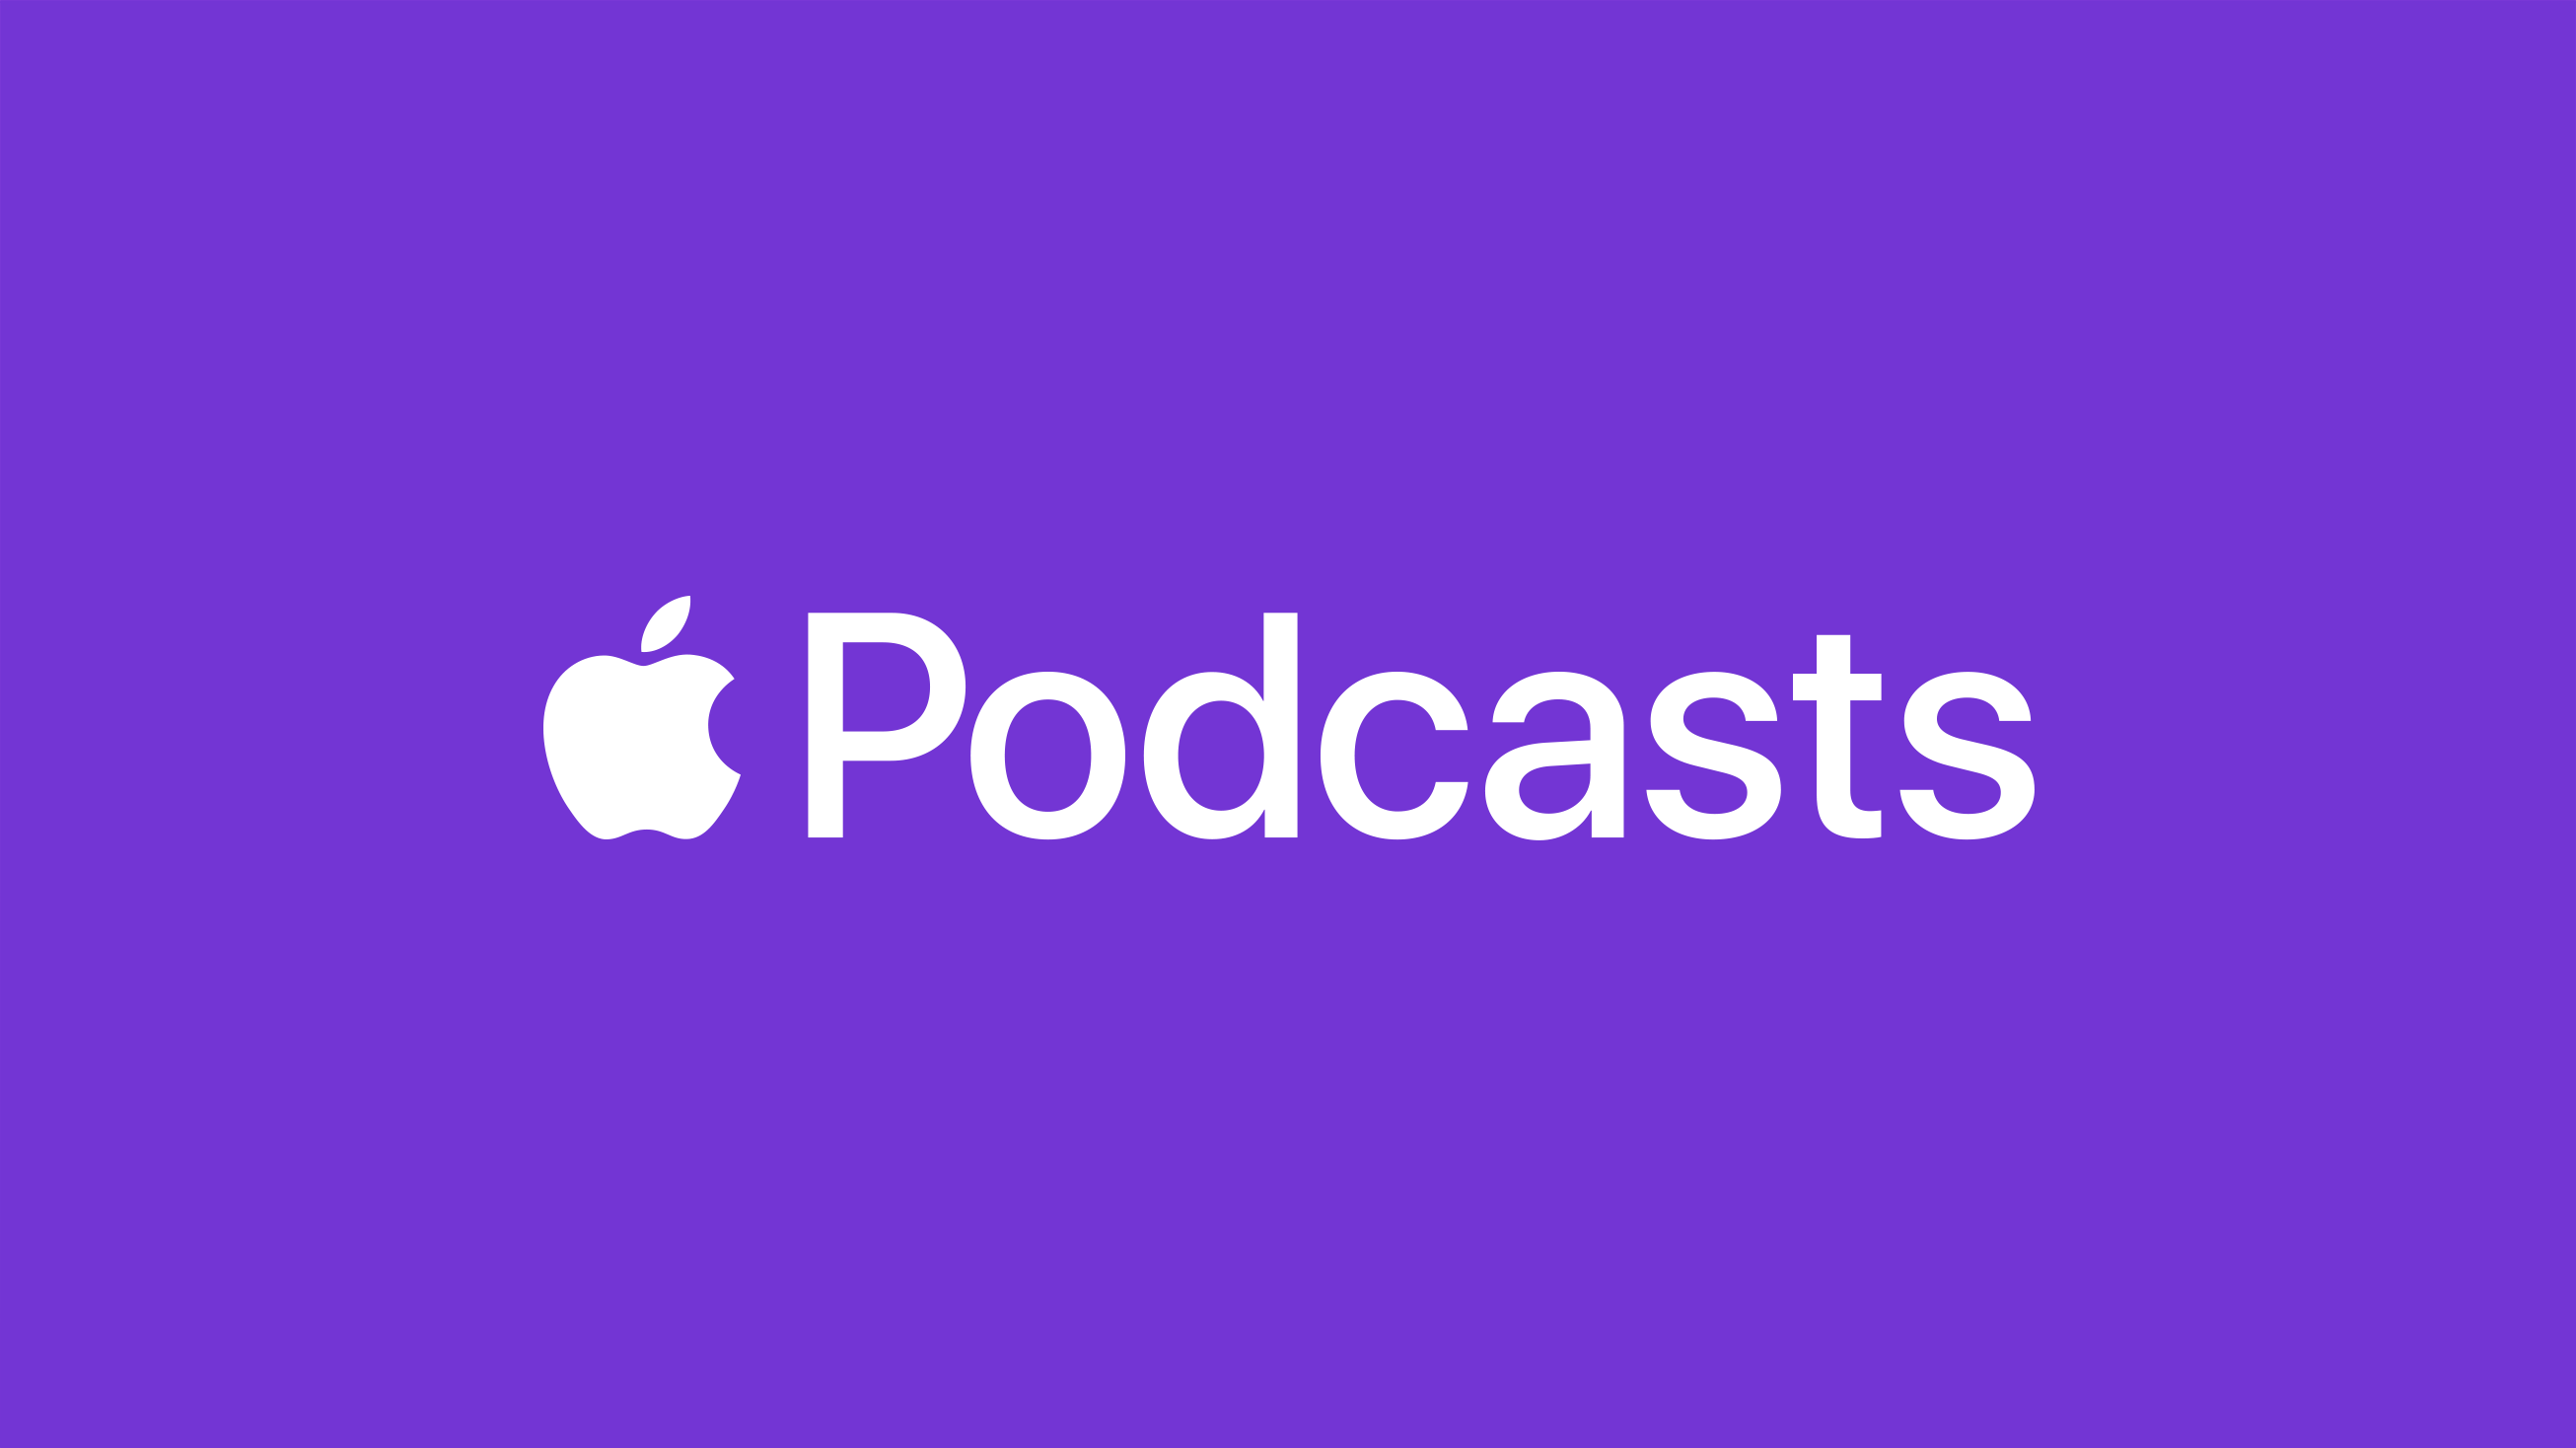 Na imagem, lê-se "Apple Podcasts", mas a palavra "Apple" é substituída pelo logo da marca, uma maçã trincada do lado direito.